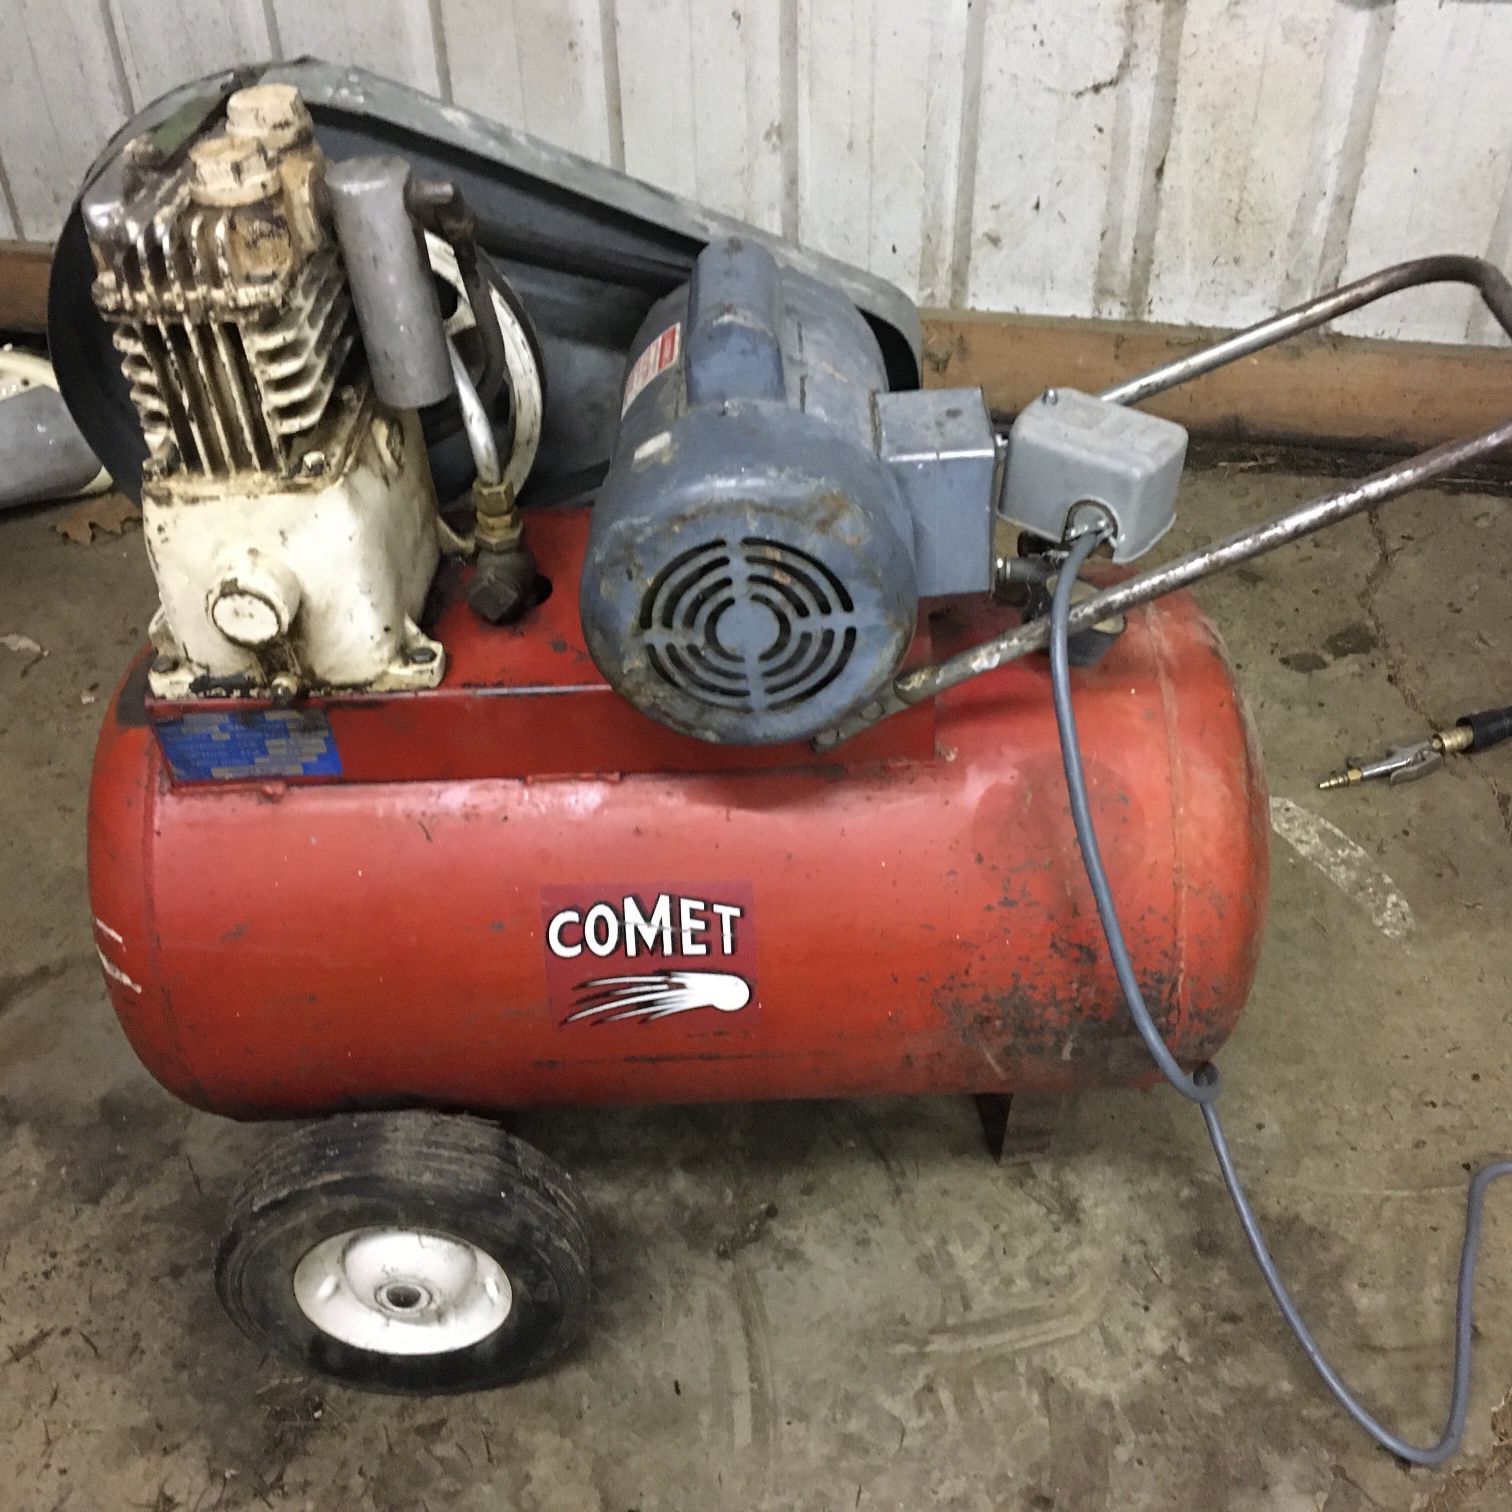 Comet 1 HP Air Compressor. 